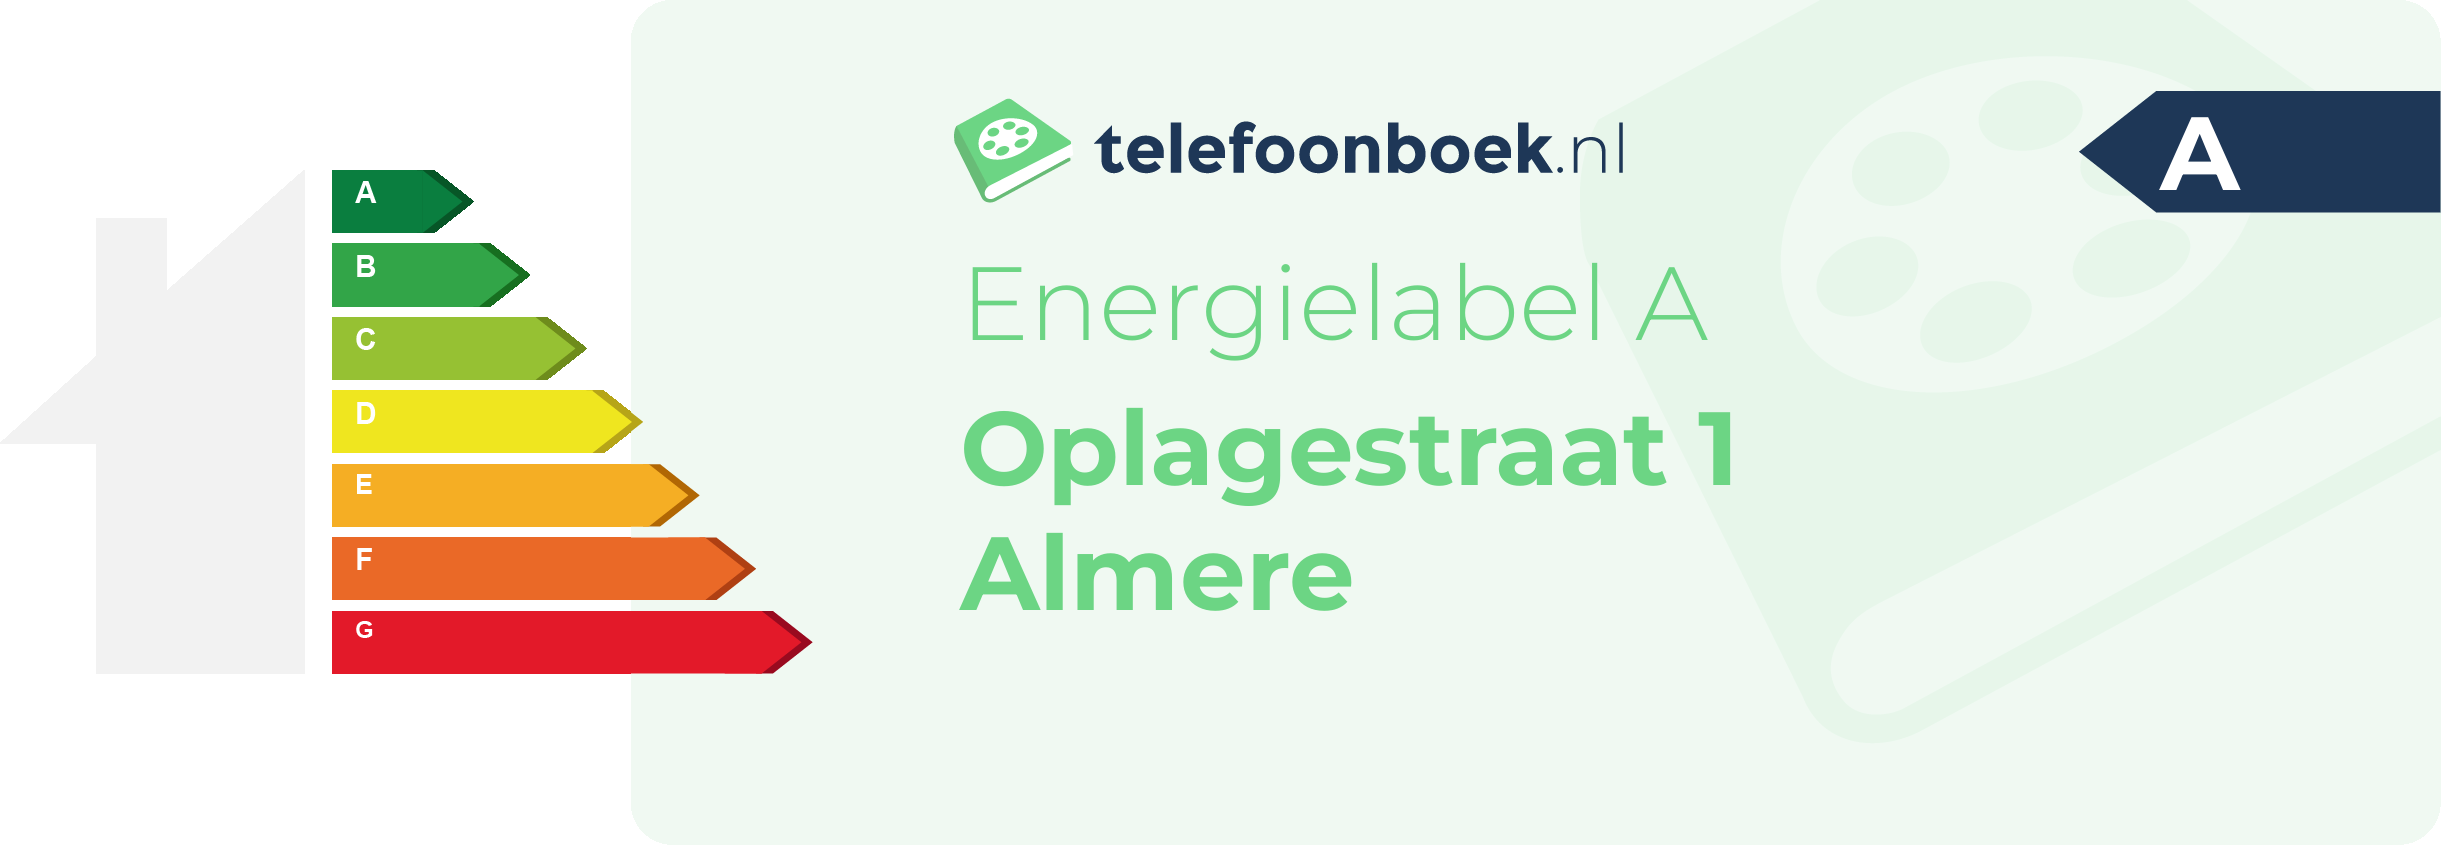 Energielabel Oplagestraat 1 Almere